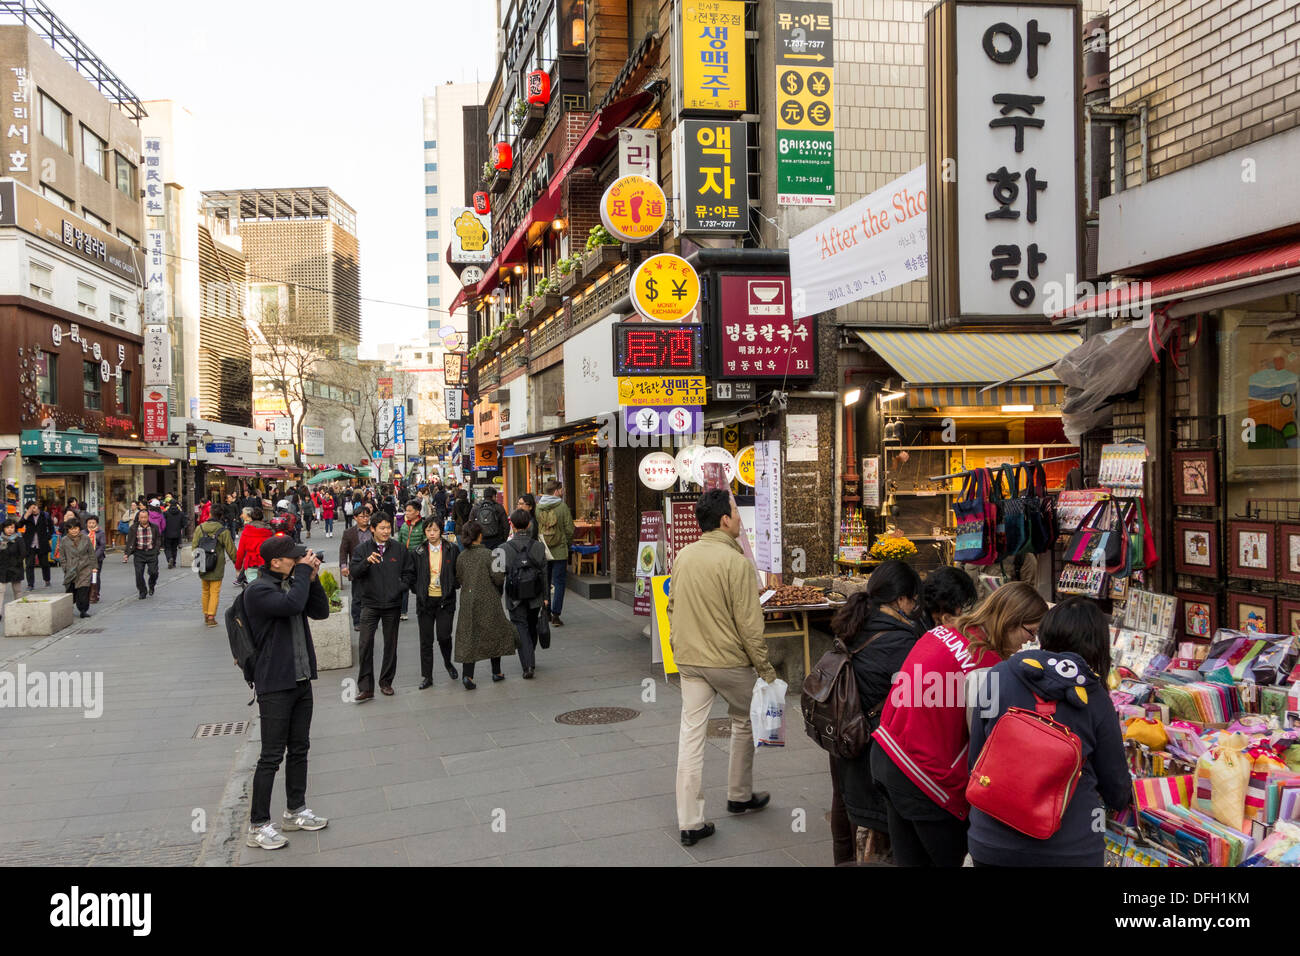 Street scene in Insadong, Seoul, Korea Stock Photo